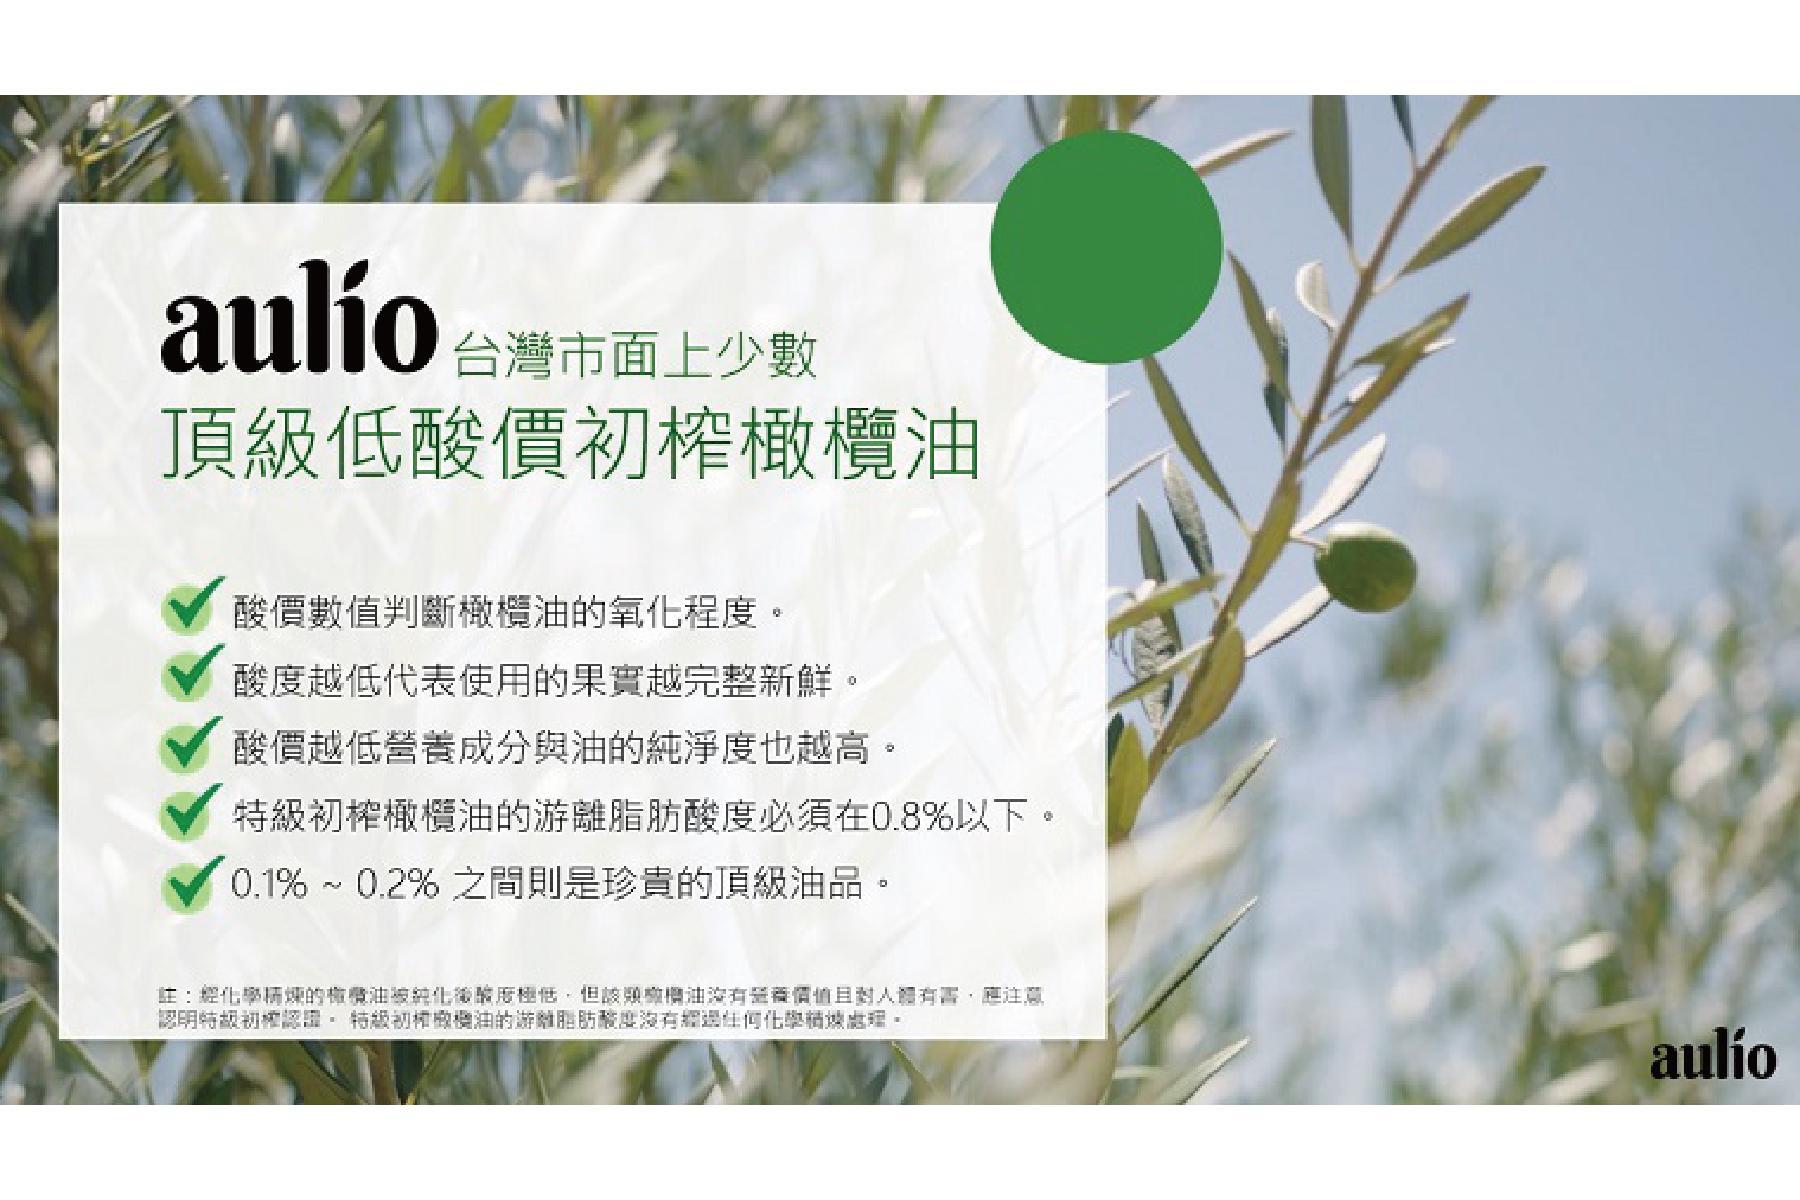 【aulio】澳洲天然特級初榨橄欖油2瓶 提貨券3